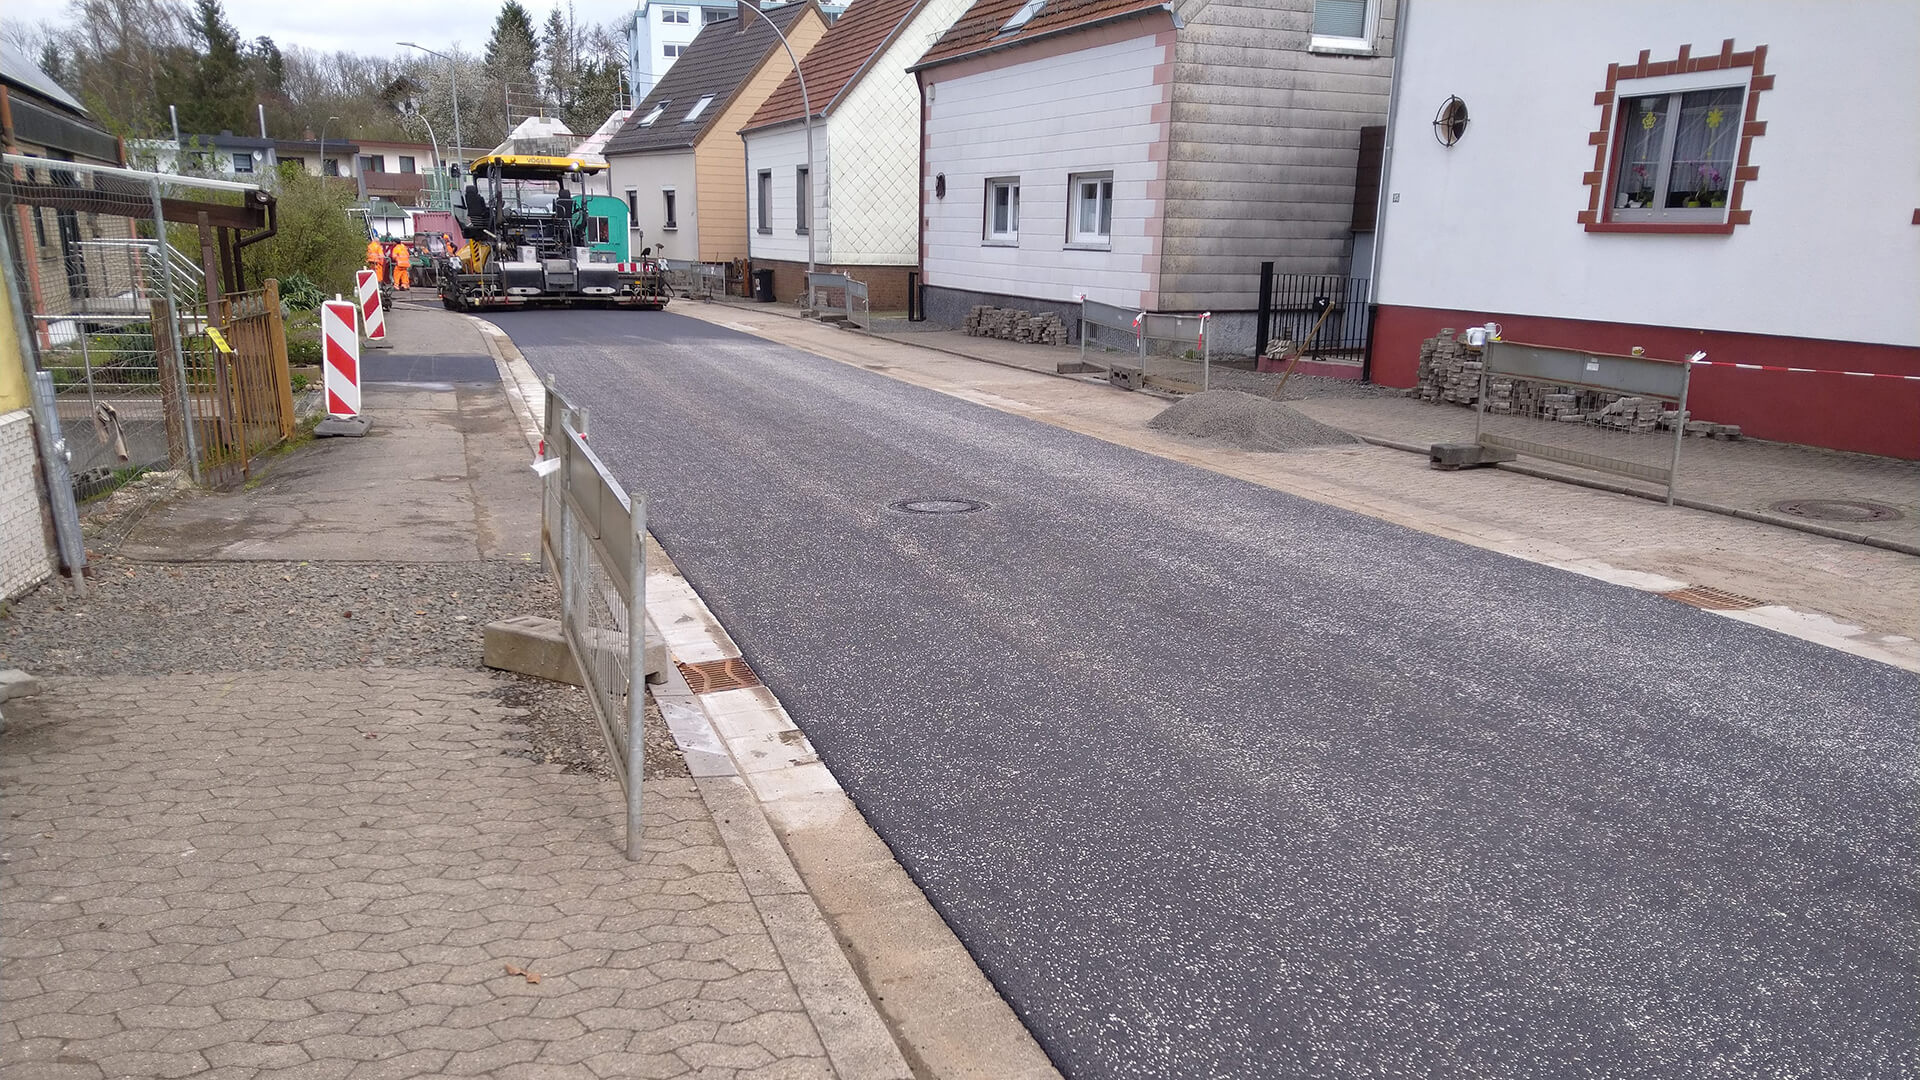 In dieser Woche wurde die Spieser Straße asphaltiert. Die Kanalbauarbeiten sind beendet. Die Fahrbahn ist für den Verkehr wieder freigegeben (Bild: M. Hoffmann).